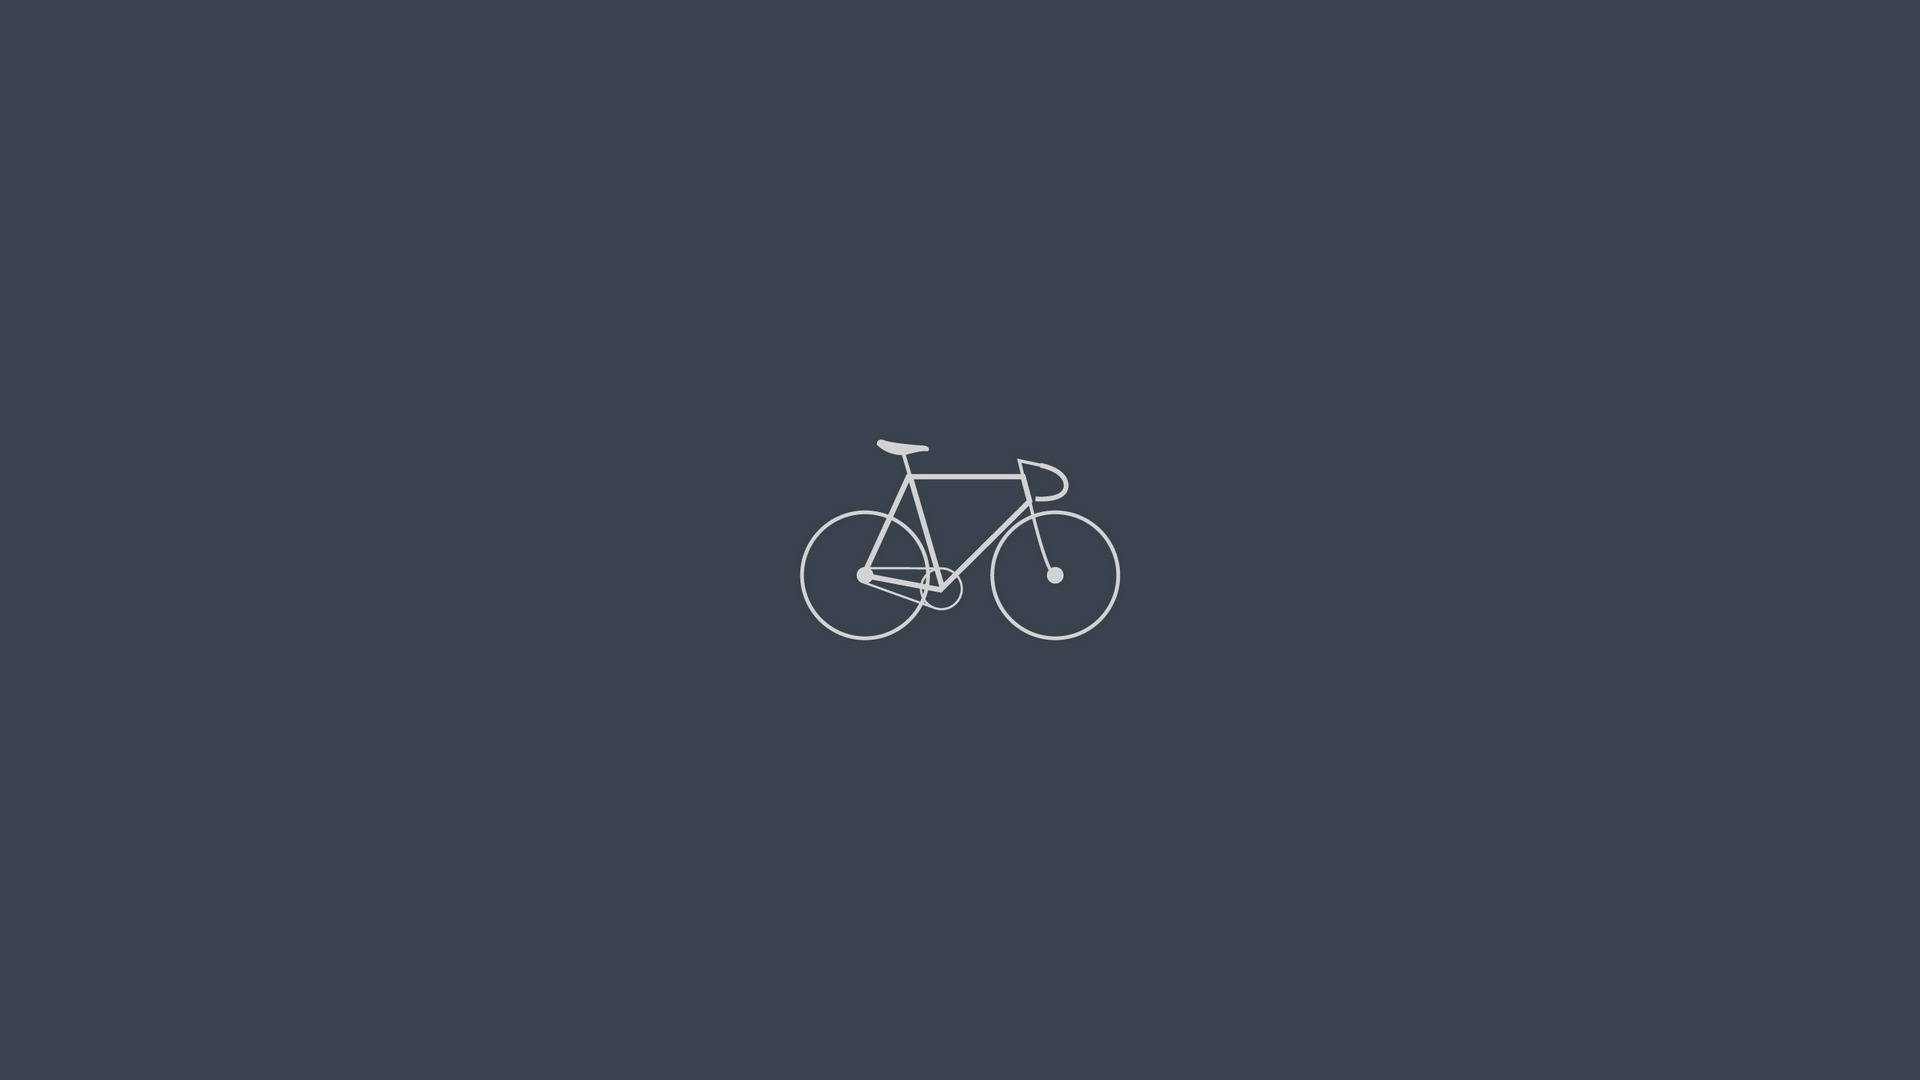 Simple Hd Bike In Gray